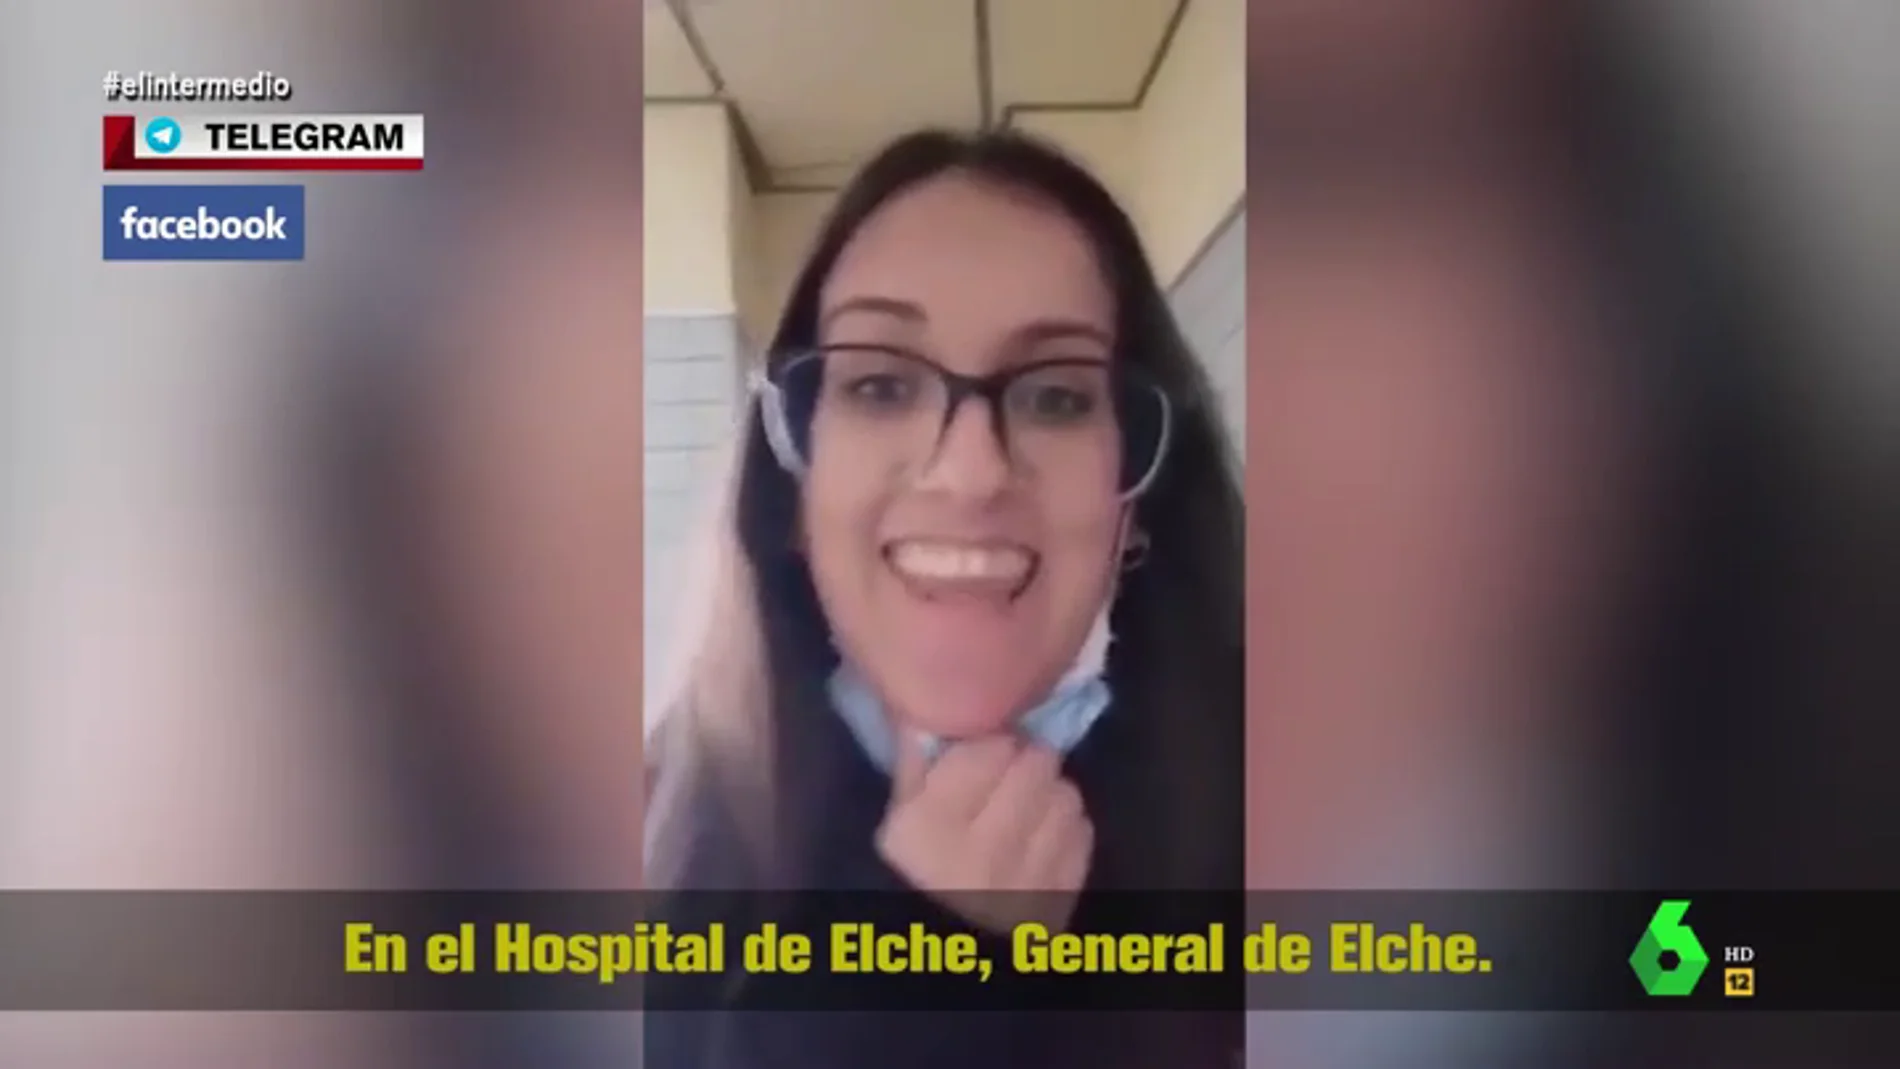 La surrealista grabación de una negacionista en un hospital con felicitaciones de su novio incluidas: "¡Ole, qué huevos tienes!"